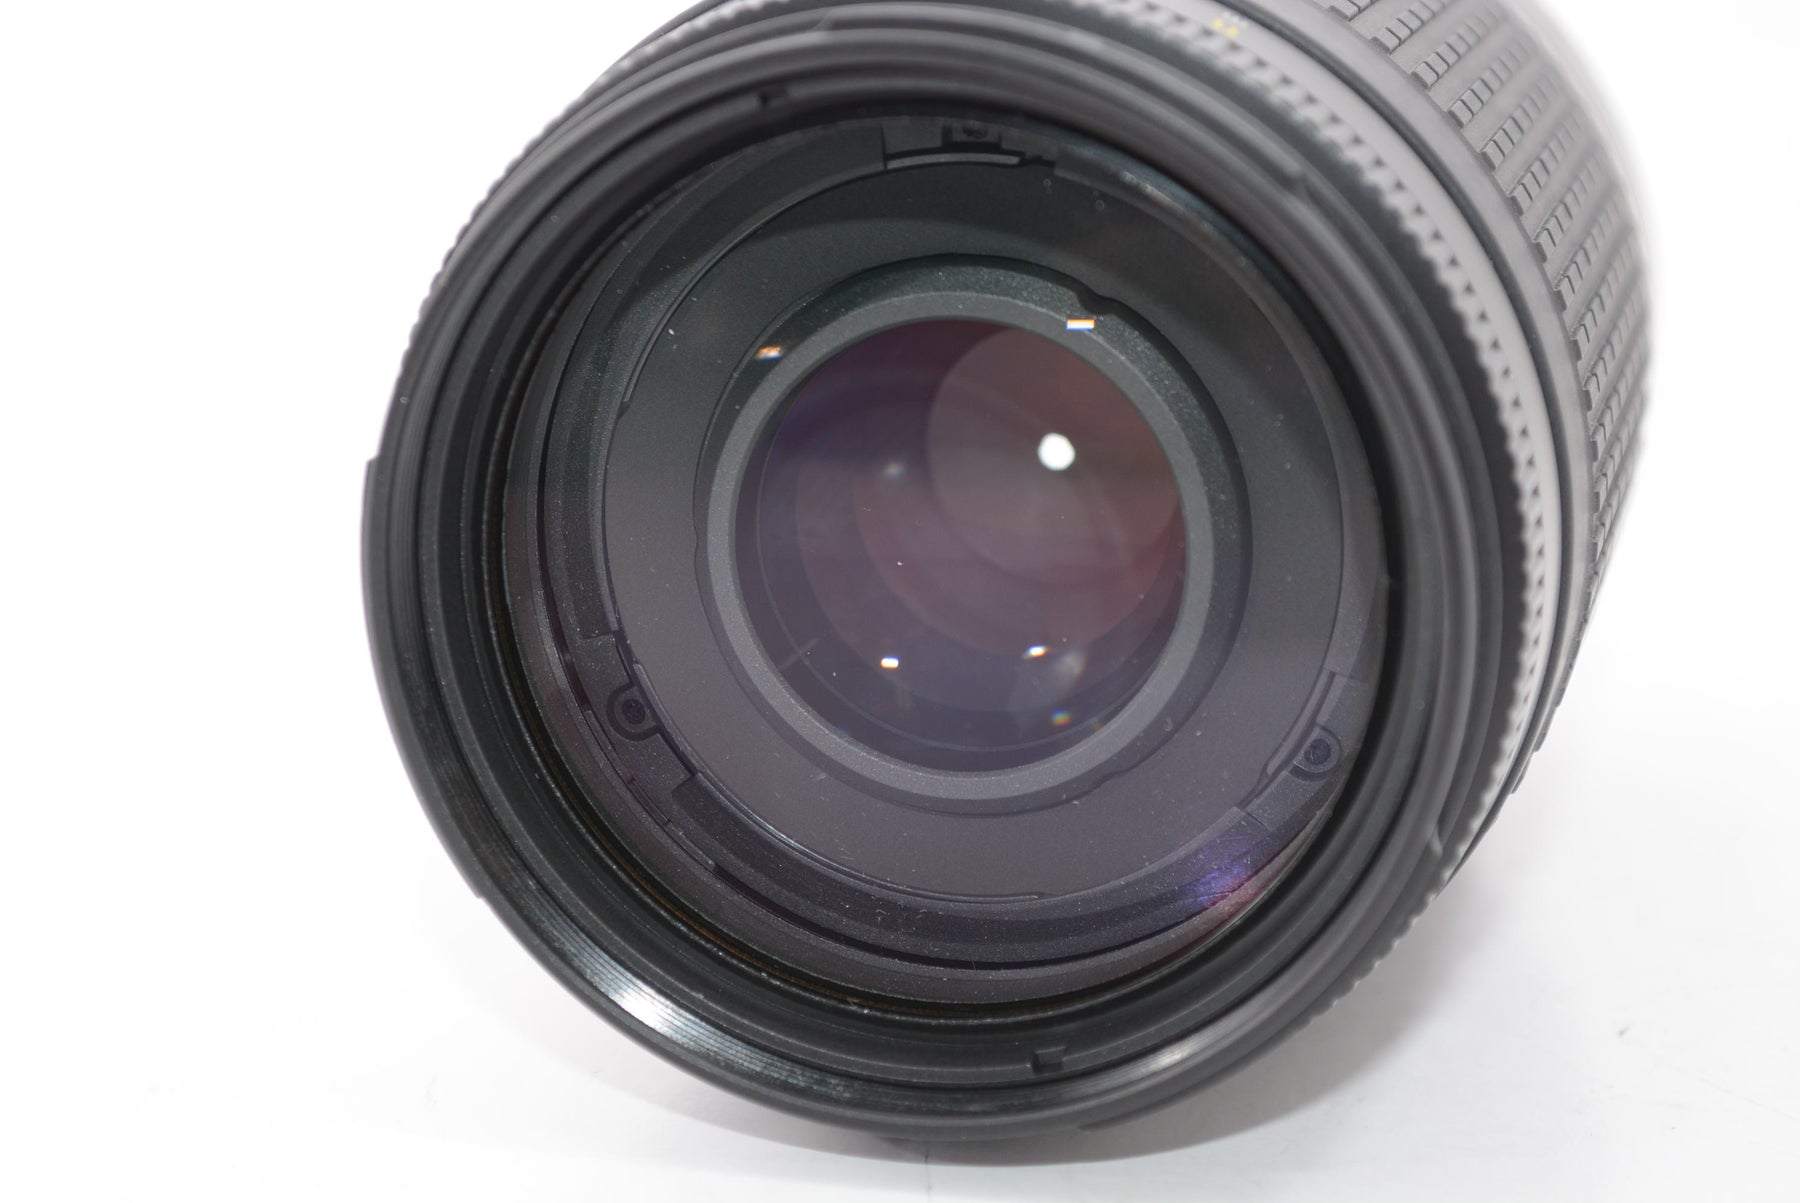 【外観特上級】Nikon AF Zoom Nikkor 70-300mm F4-5.6G ブラック (VR無し)